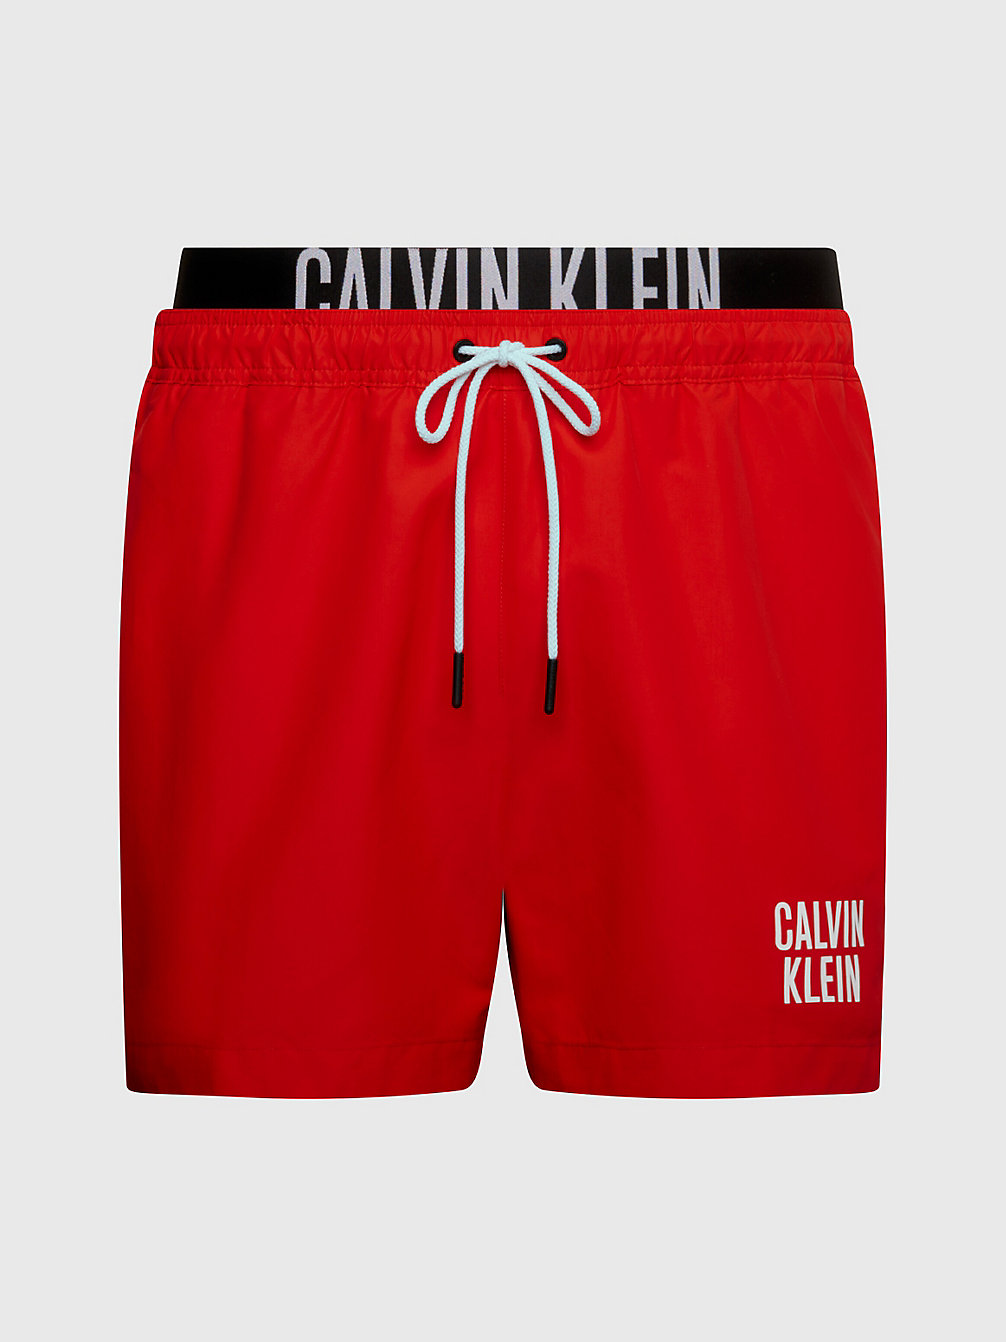 CAJUN RED Badeshorts Mit Doppeltem Bund – Intense Power undefined Herren Calvin Klein